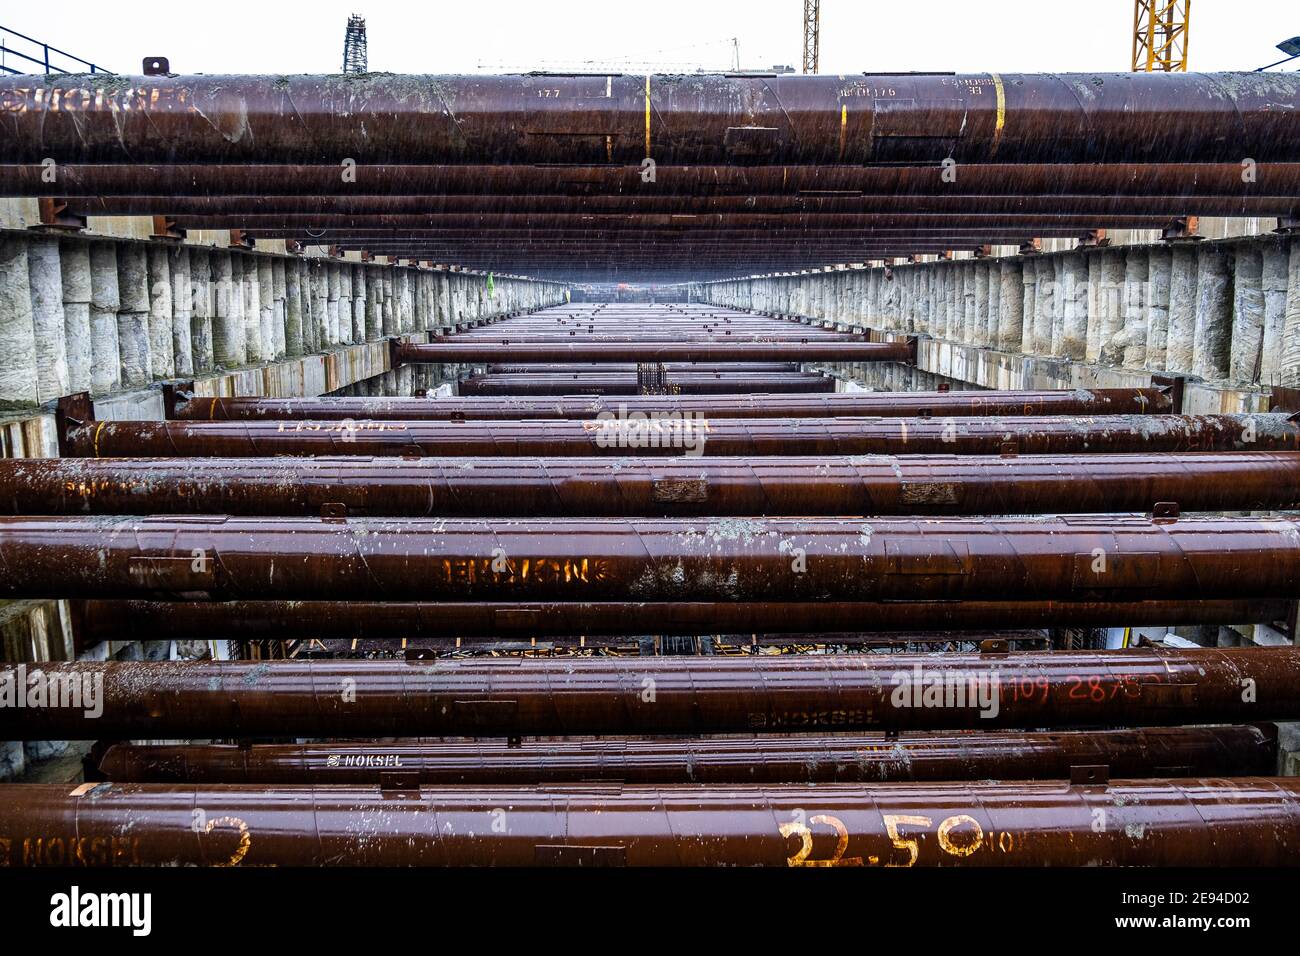 Perspektivische Ansicht von horizontalen Rohren in einem U-Bahn-Bauprojekt Stockfoto